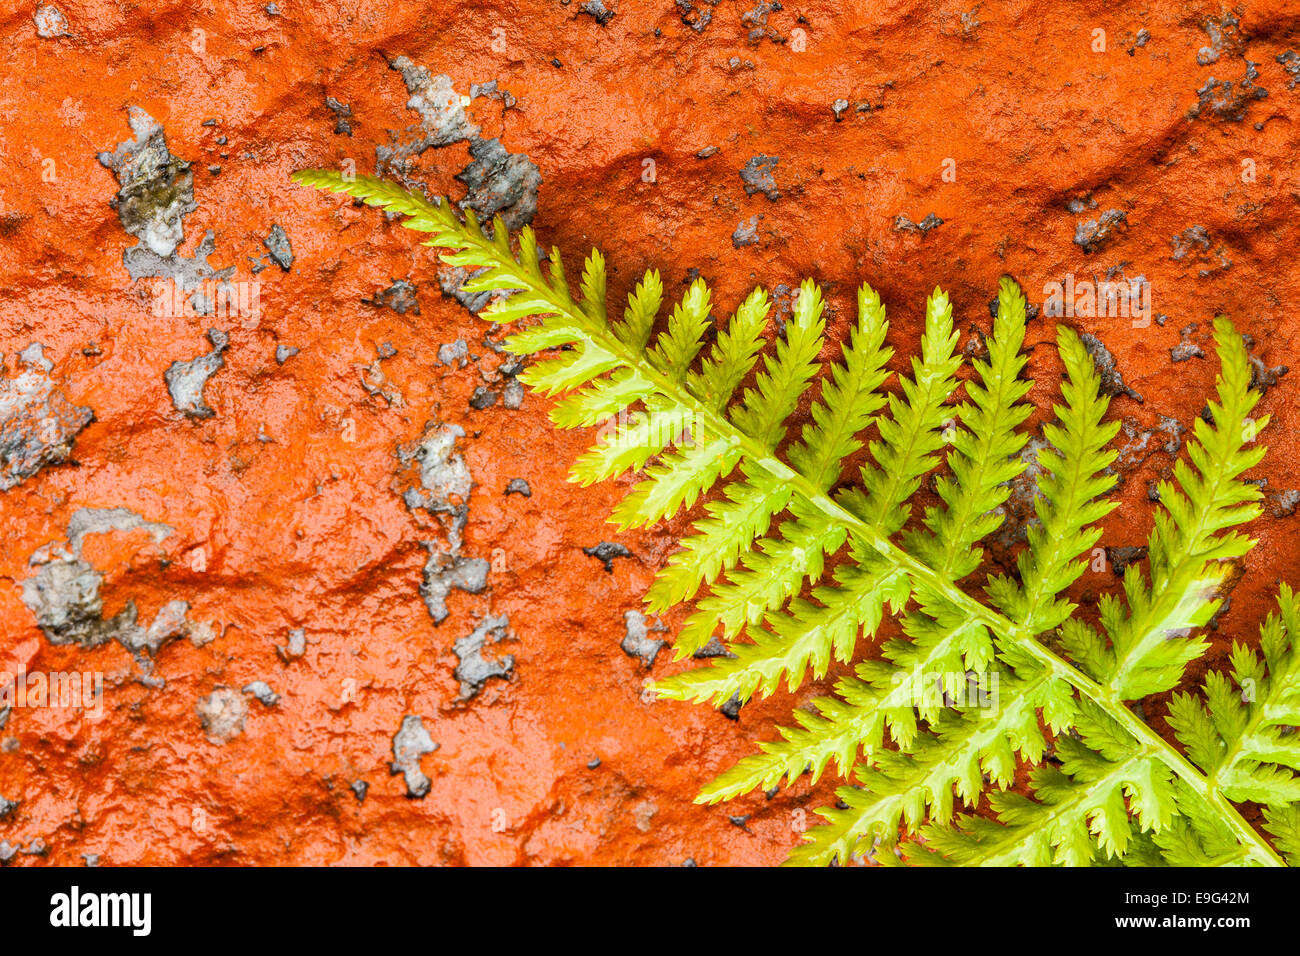 fern & red lichen Stock Photo